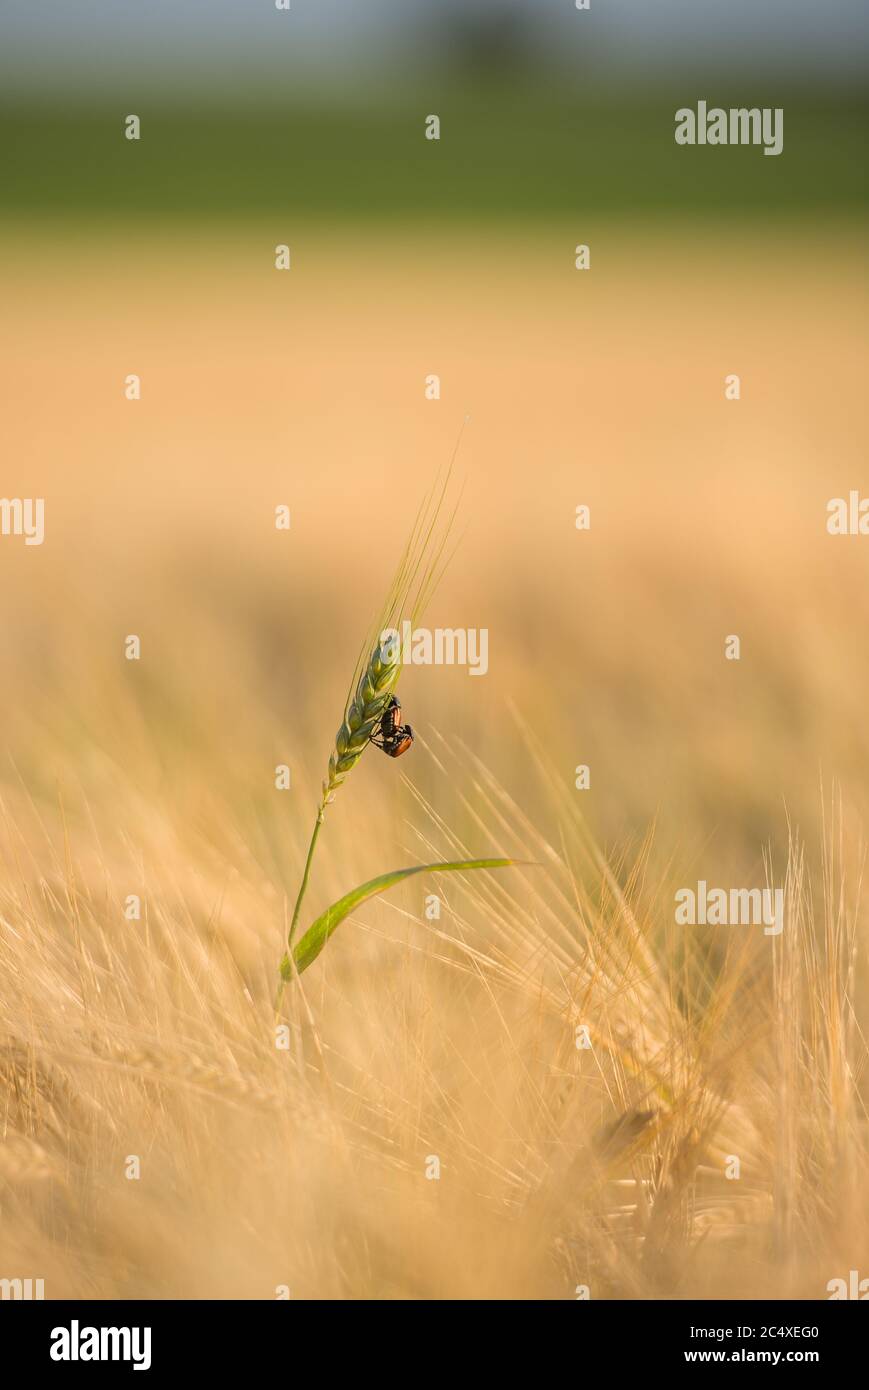 zwei Käfer übereinander auf einer Ähre im Getreidefeld Foto de stock